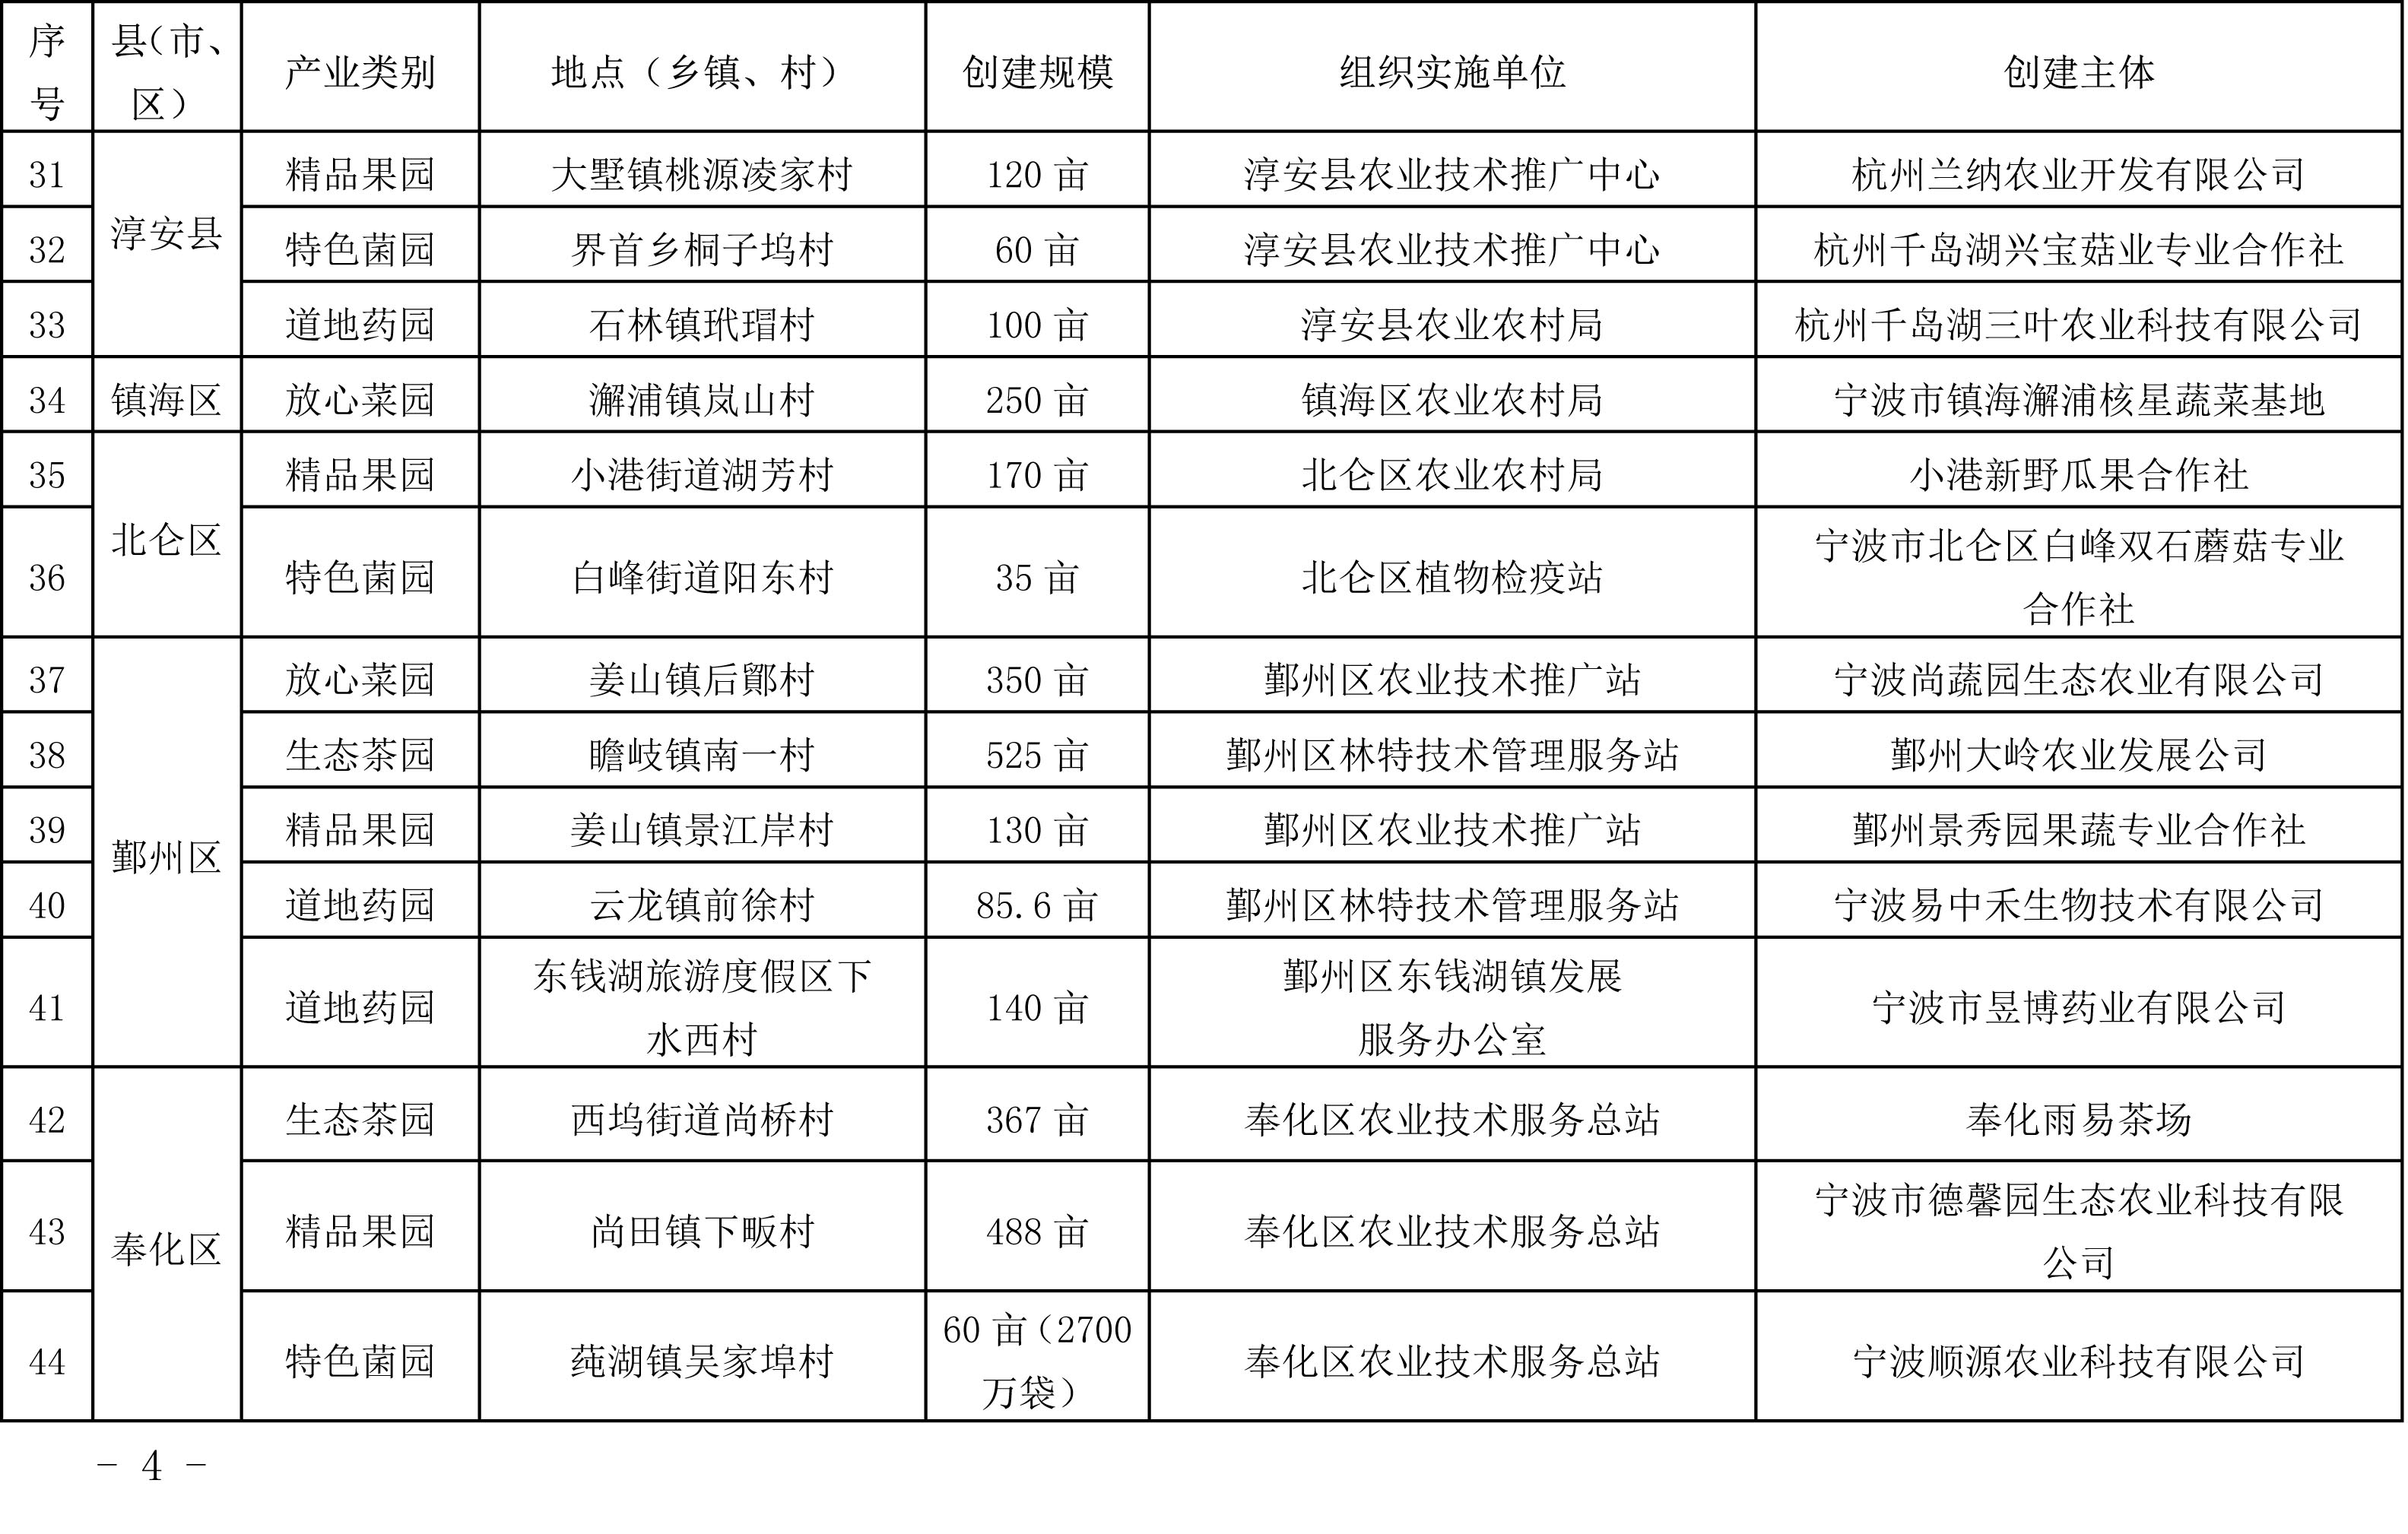 浙江省农业农村厅关于公布2019年度种植业“五园”创建省级示范基地名单的通知(图4)